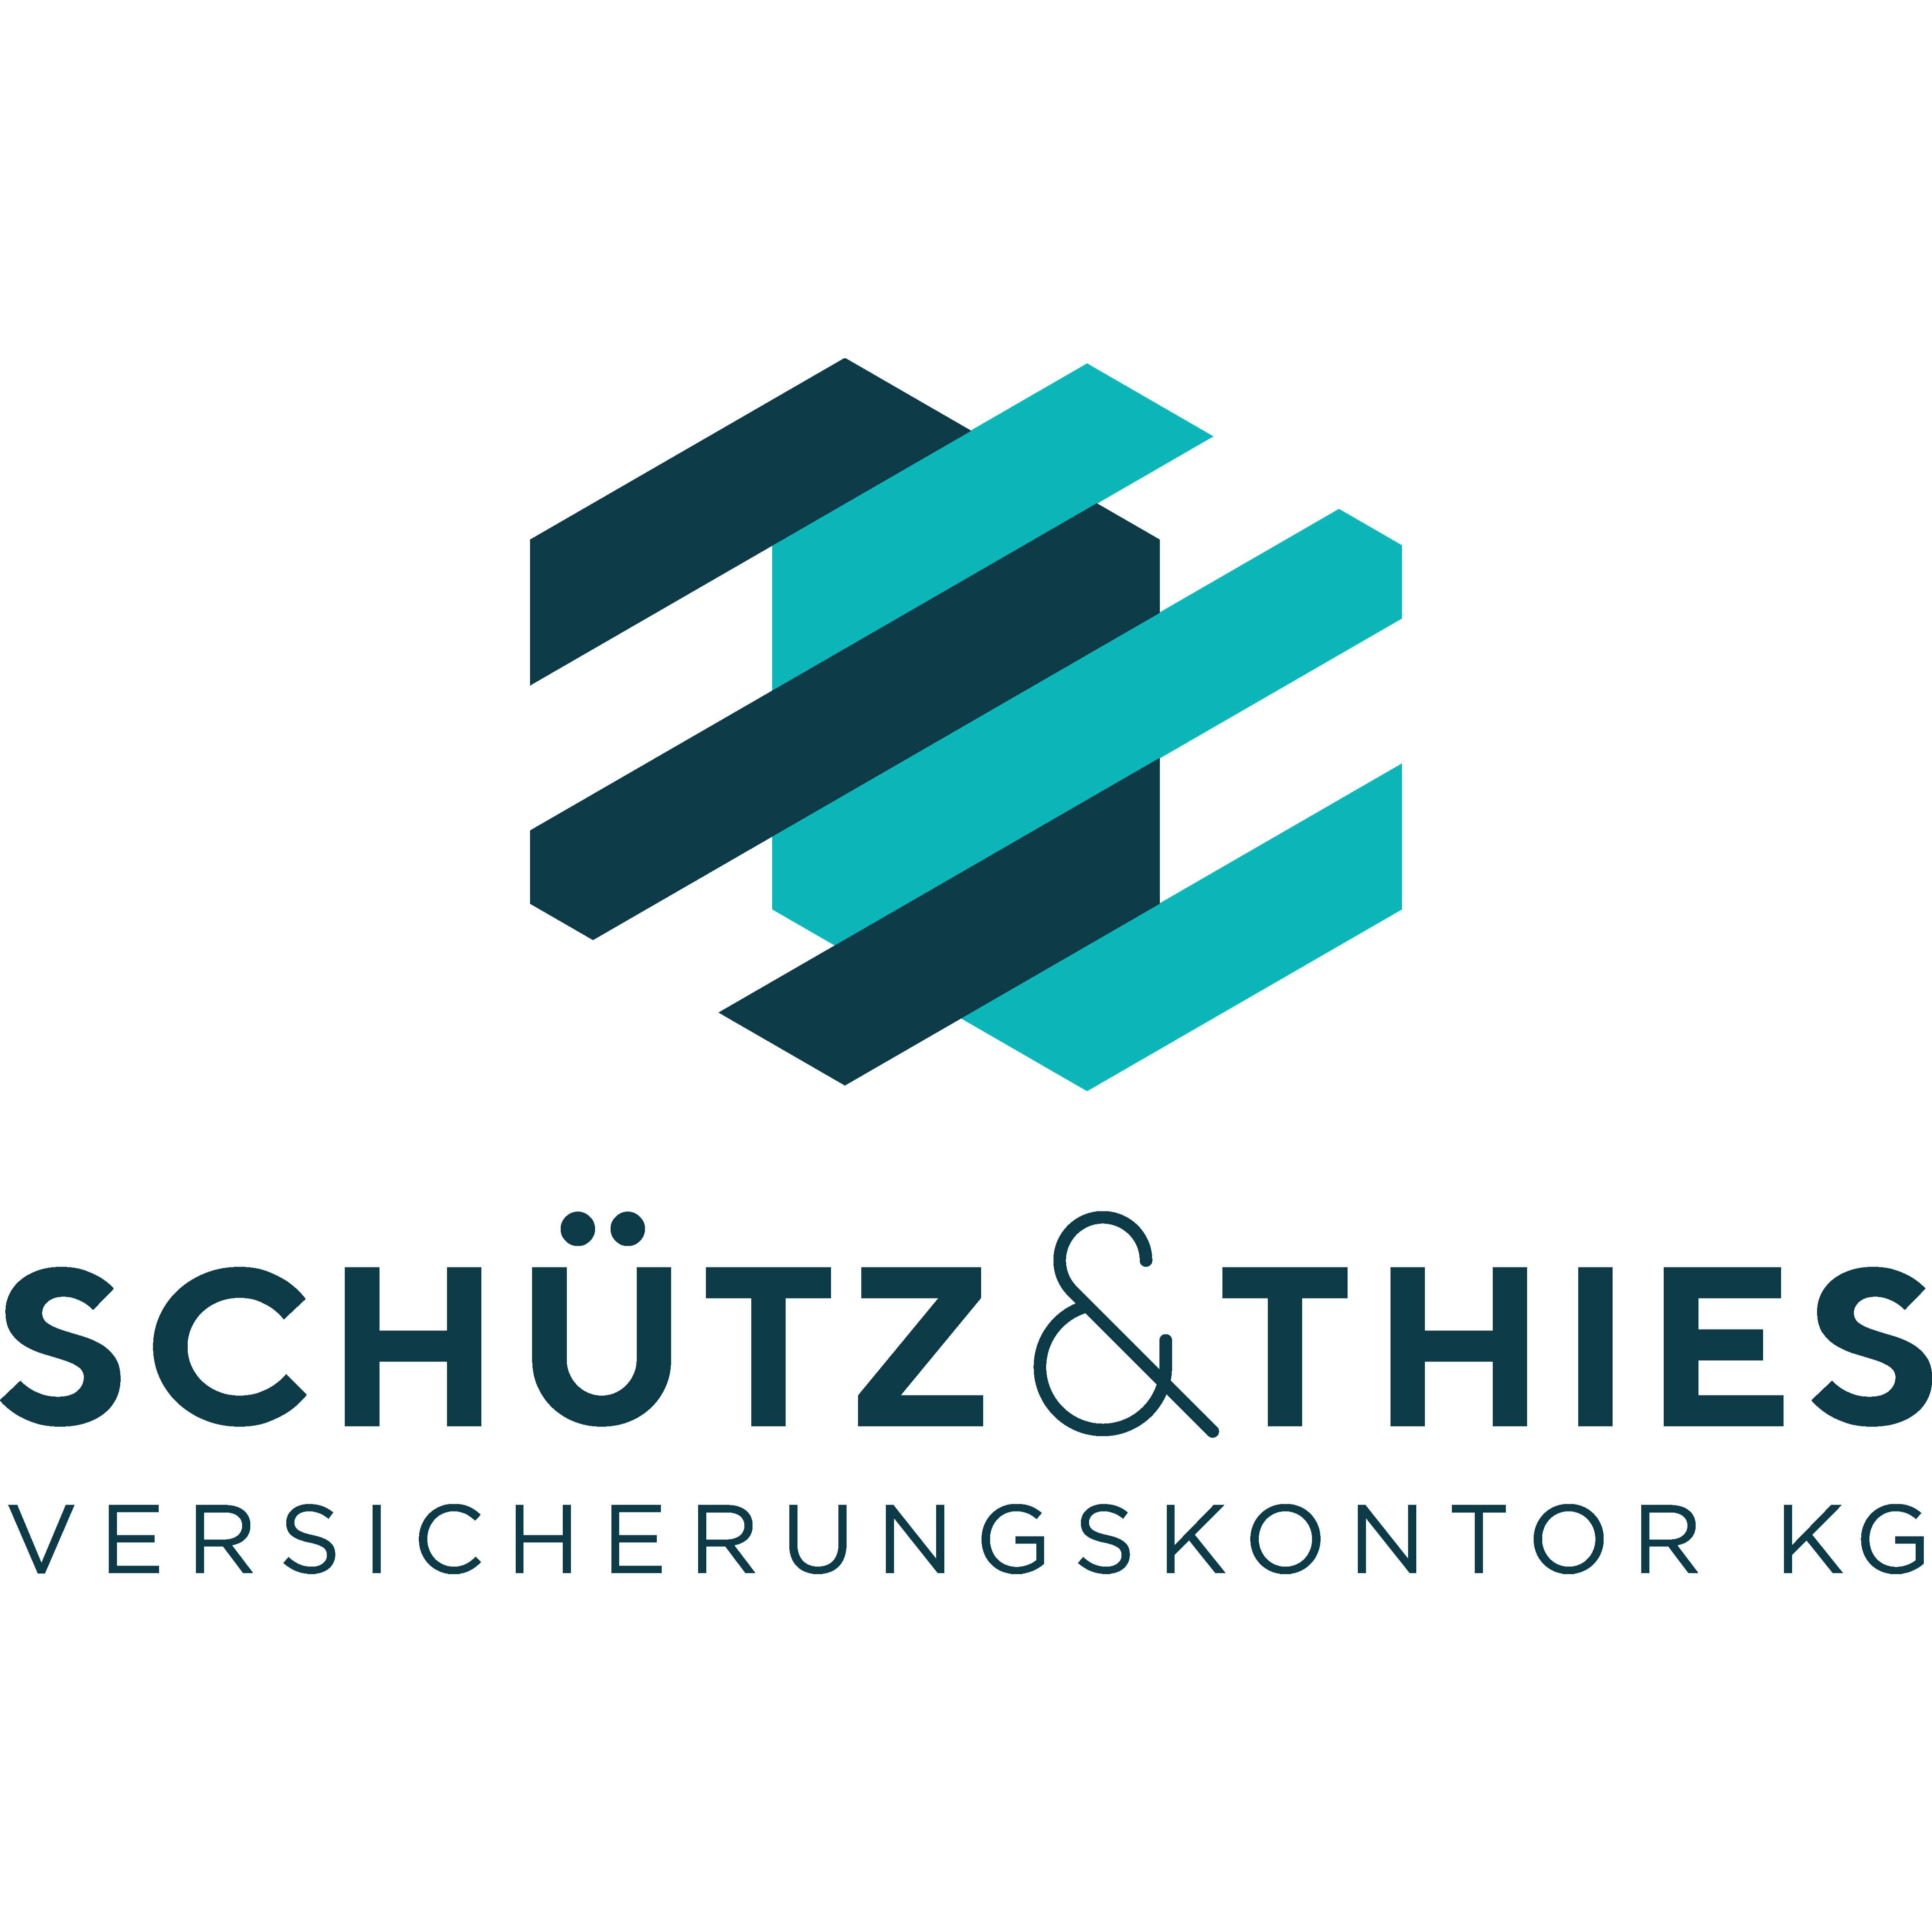 Schütz & Thies Versicherungskontor KG in Schwanewede - Logo